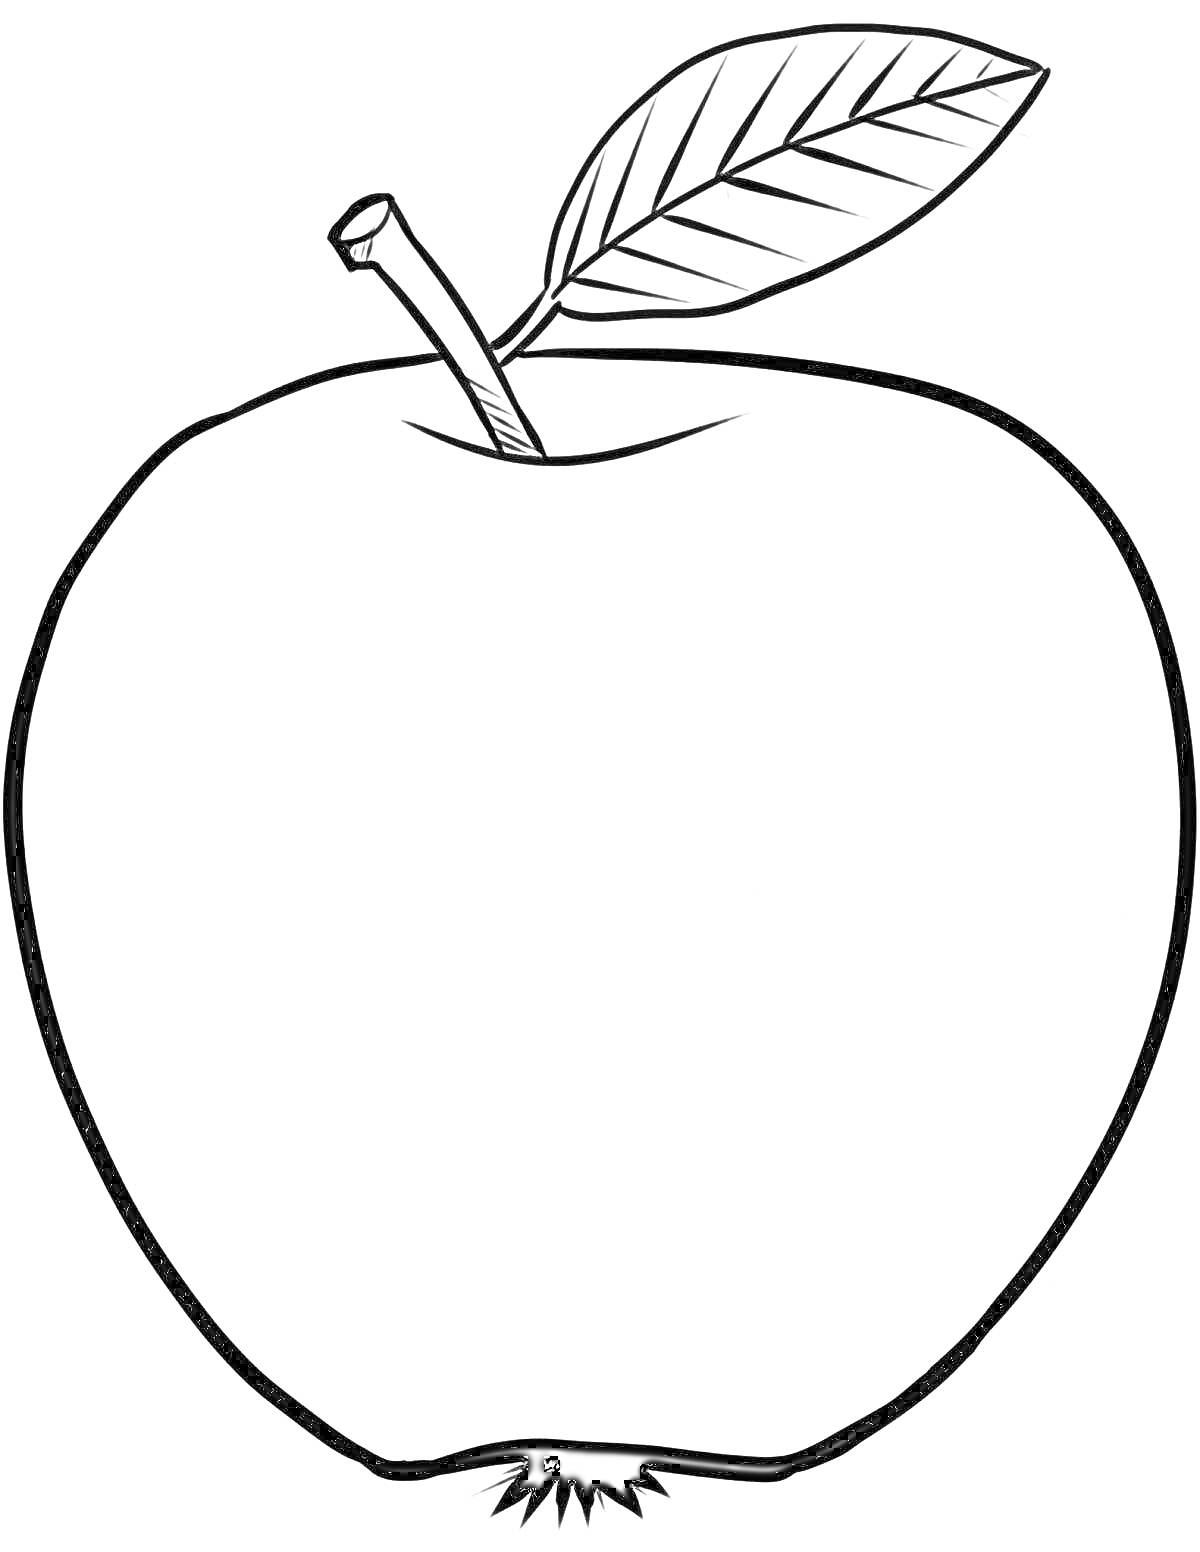 Яблоко с листочком и черенком